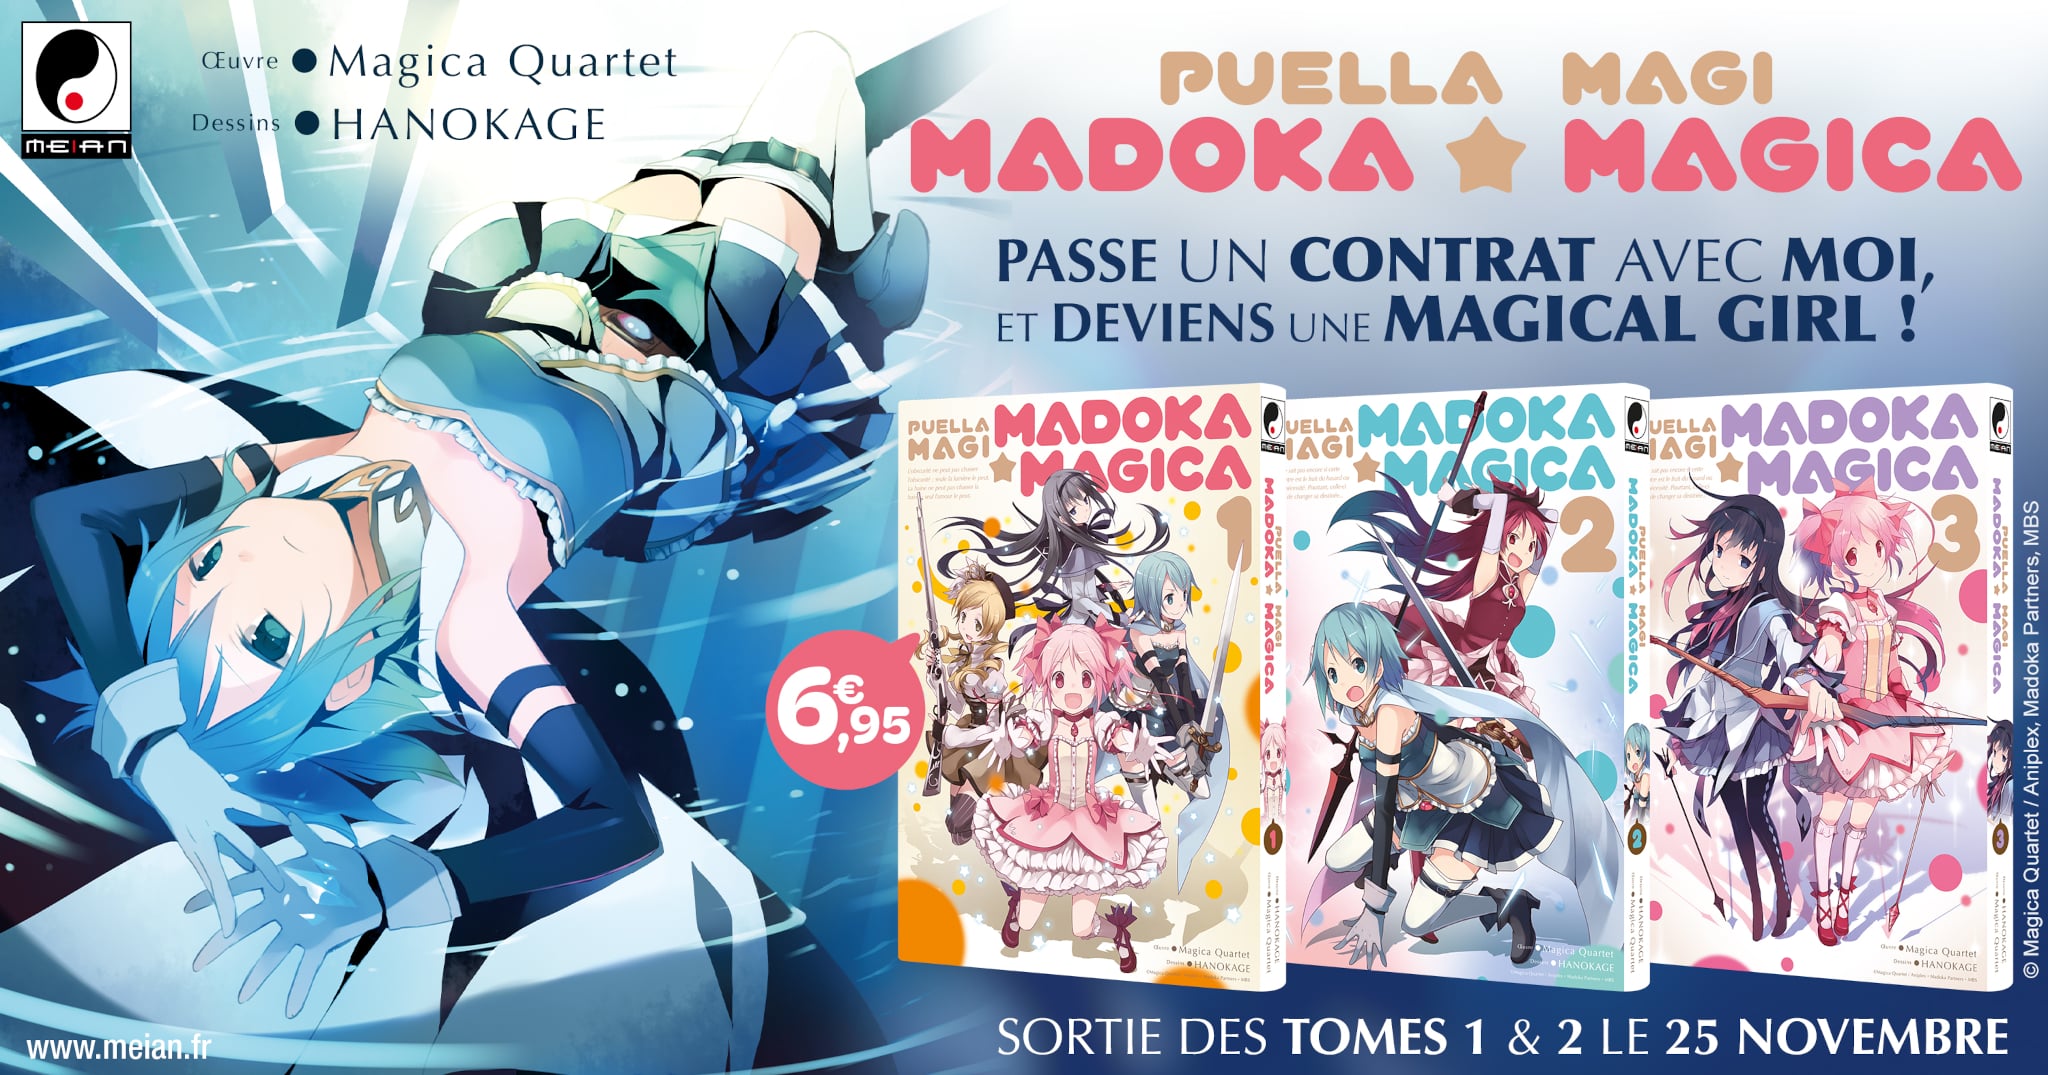 Annonce de la date de sortie en France du manga Puella Magi Madoka Magica, aux éditions Meian